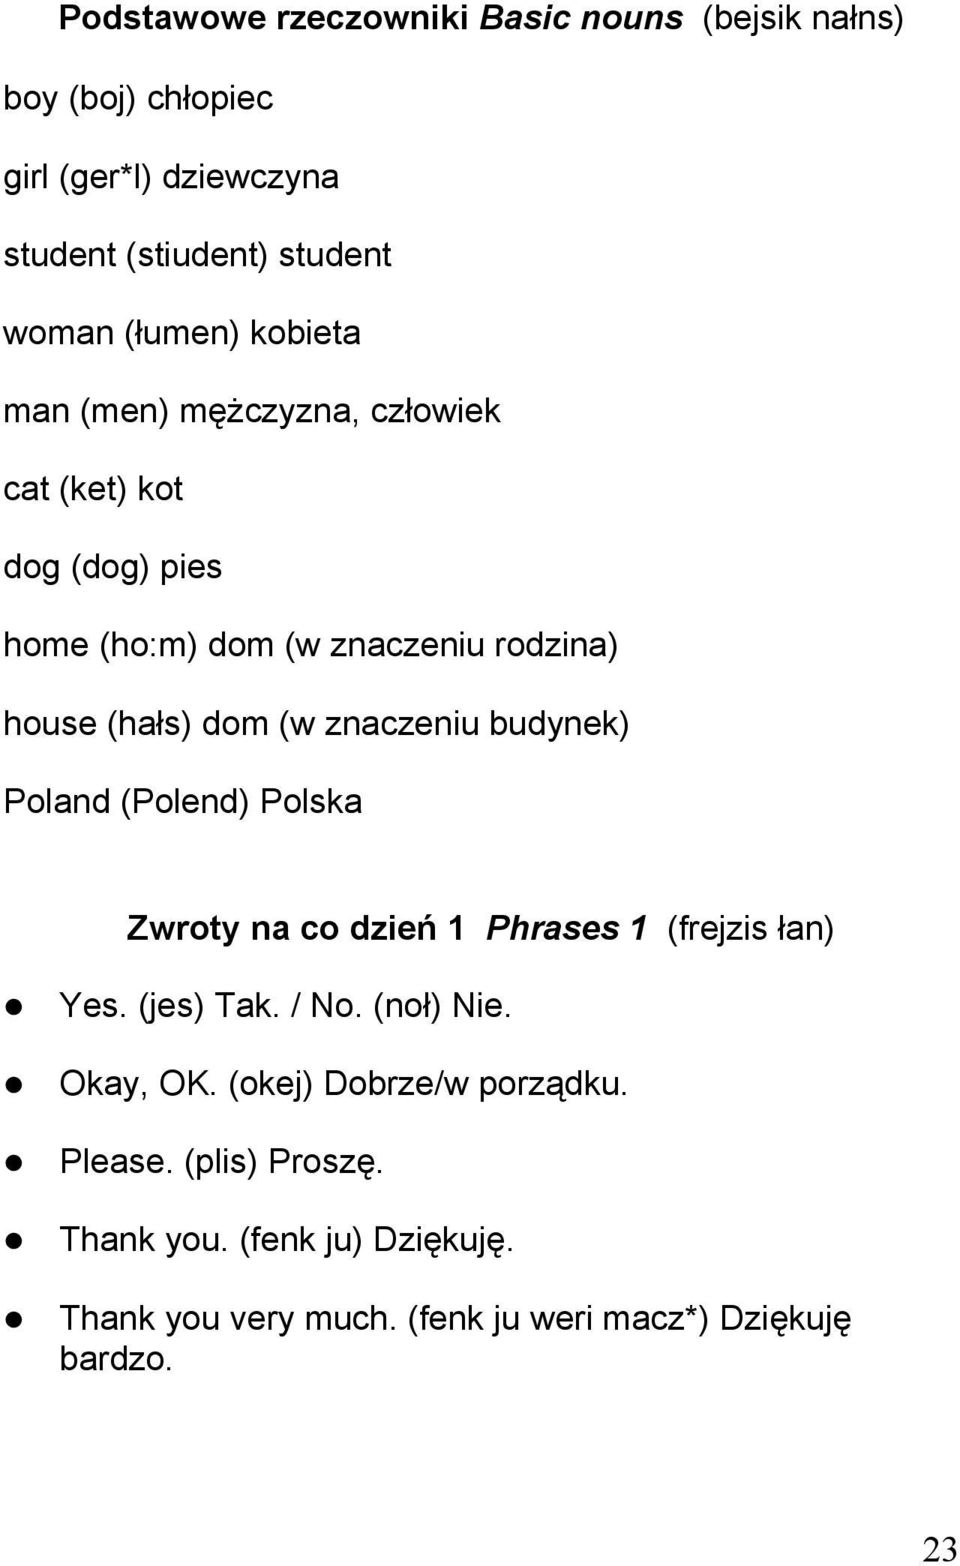 znaczeniu budynek) Poland (Polend) Polska Zwroty na co dzień 1 Phrases 1 (frejzis łan) Yes. (jes) Tak. / No. (noł) Nie. Okay, OK.